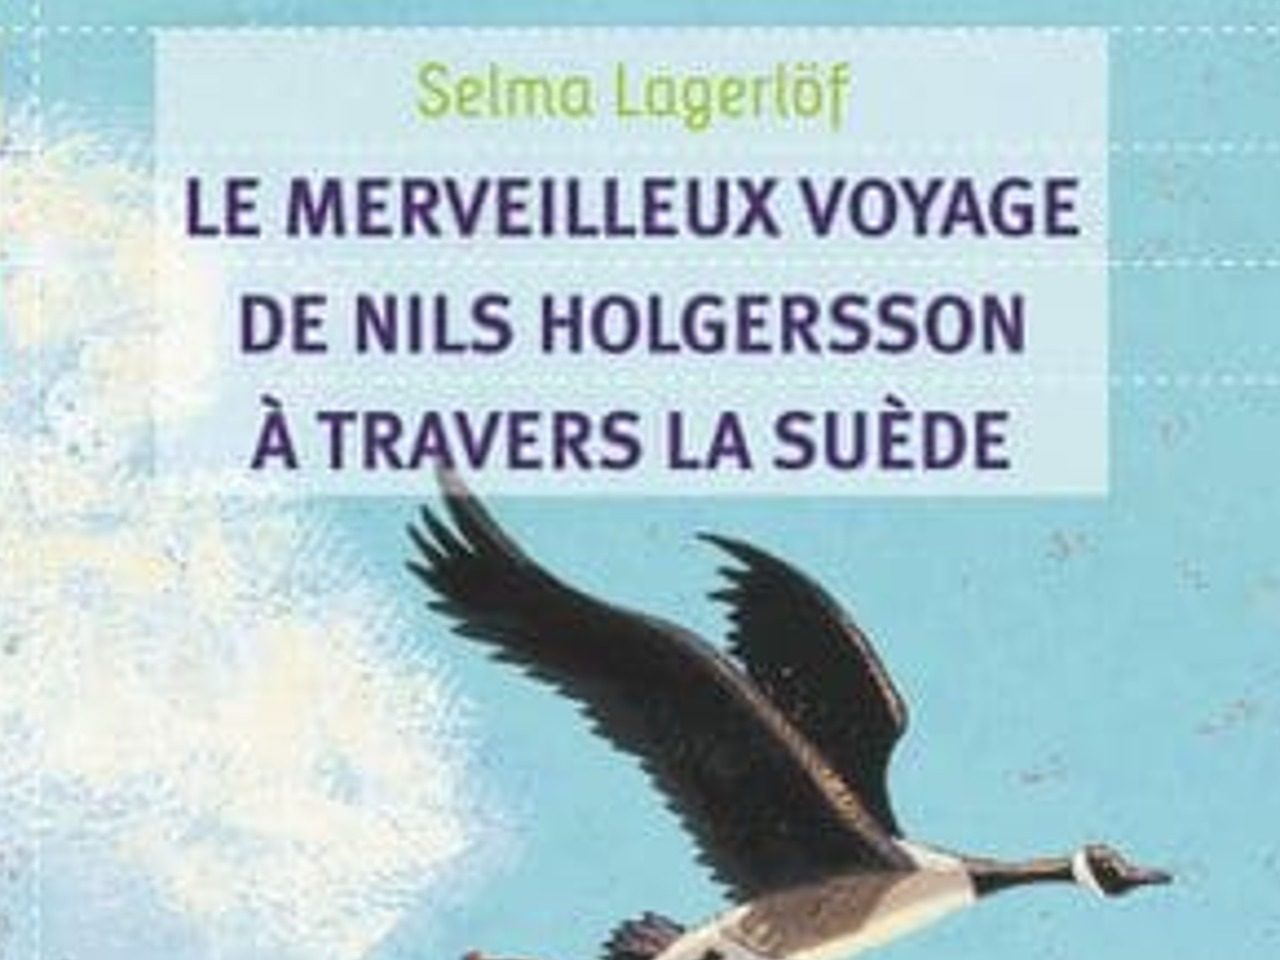 Couverture du roman Le Merveilleux voyage de Nils Holgersson à travers la Suède de Selma Lagerlöf, montrant un petit enfant volant sur le dos d'une oie.